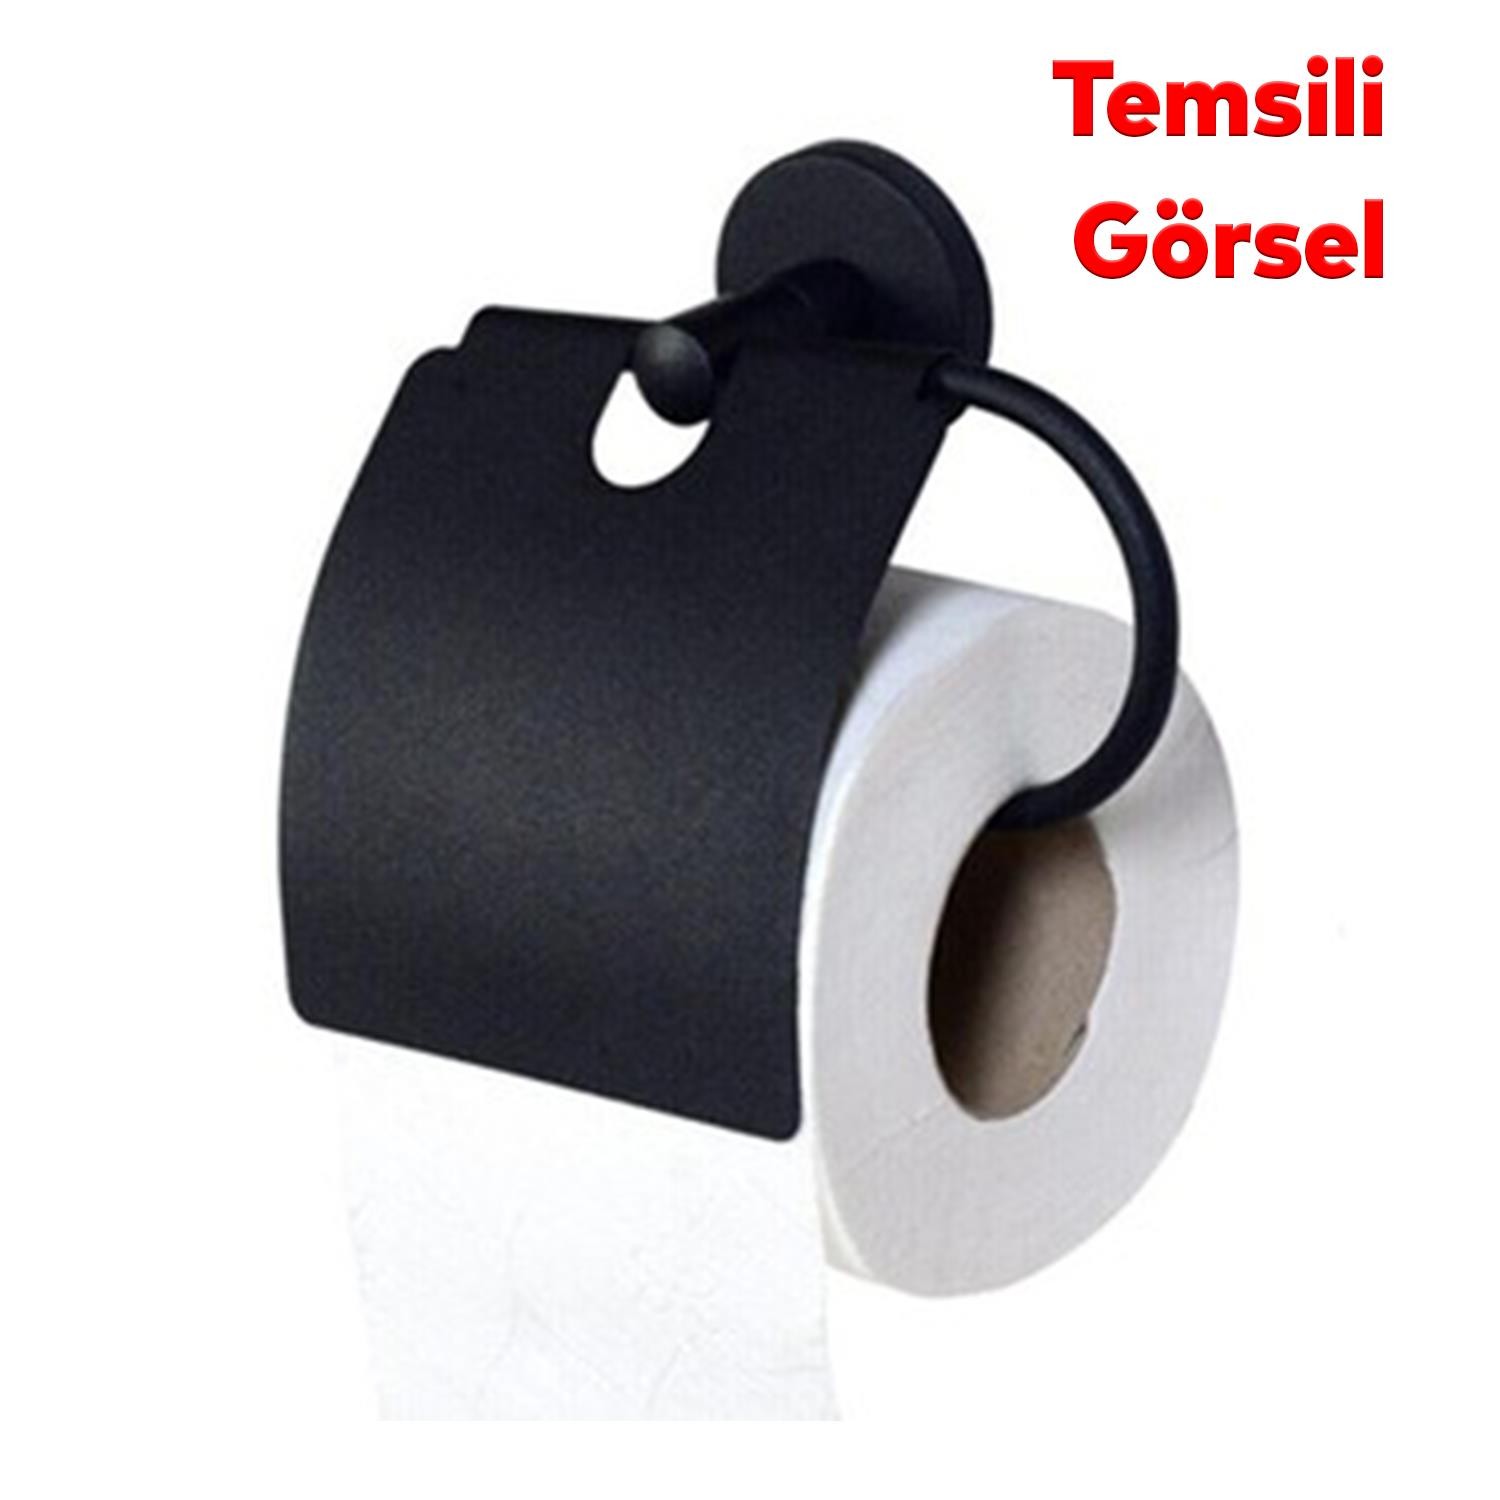 Yapışkanlı Tuvalet Kağıtlık Aparat Kapalı WC Kağıt Standı Paslanmaz Metal Sağlam Siyah Renk